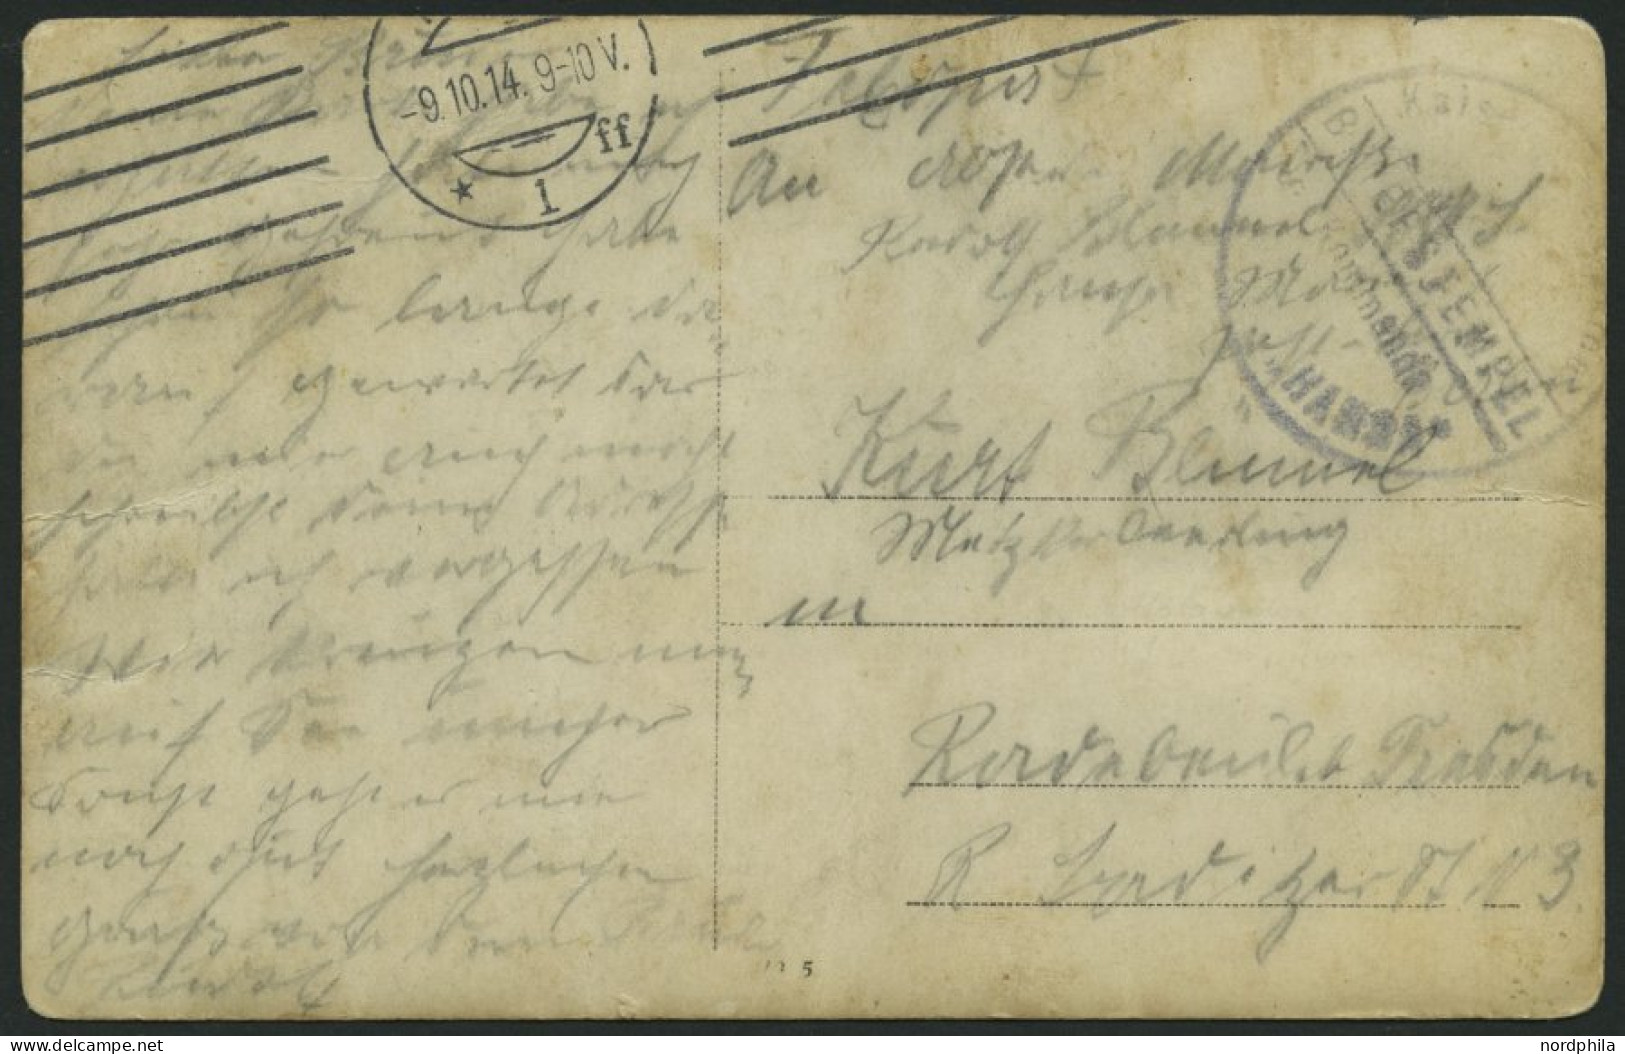 MSP VON 1914 - 1918 (Großer Kreuzer HANSA), 9.10.1914, Violetter Briefstempel, Feldpost-Ansichtskarte Von Bord Der Hansa - Maritiem